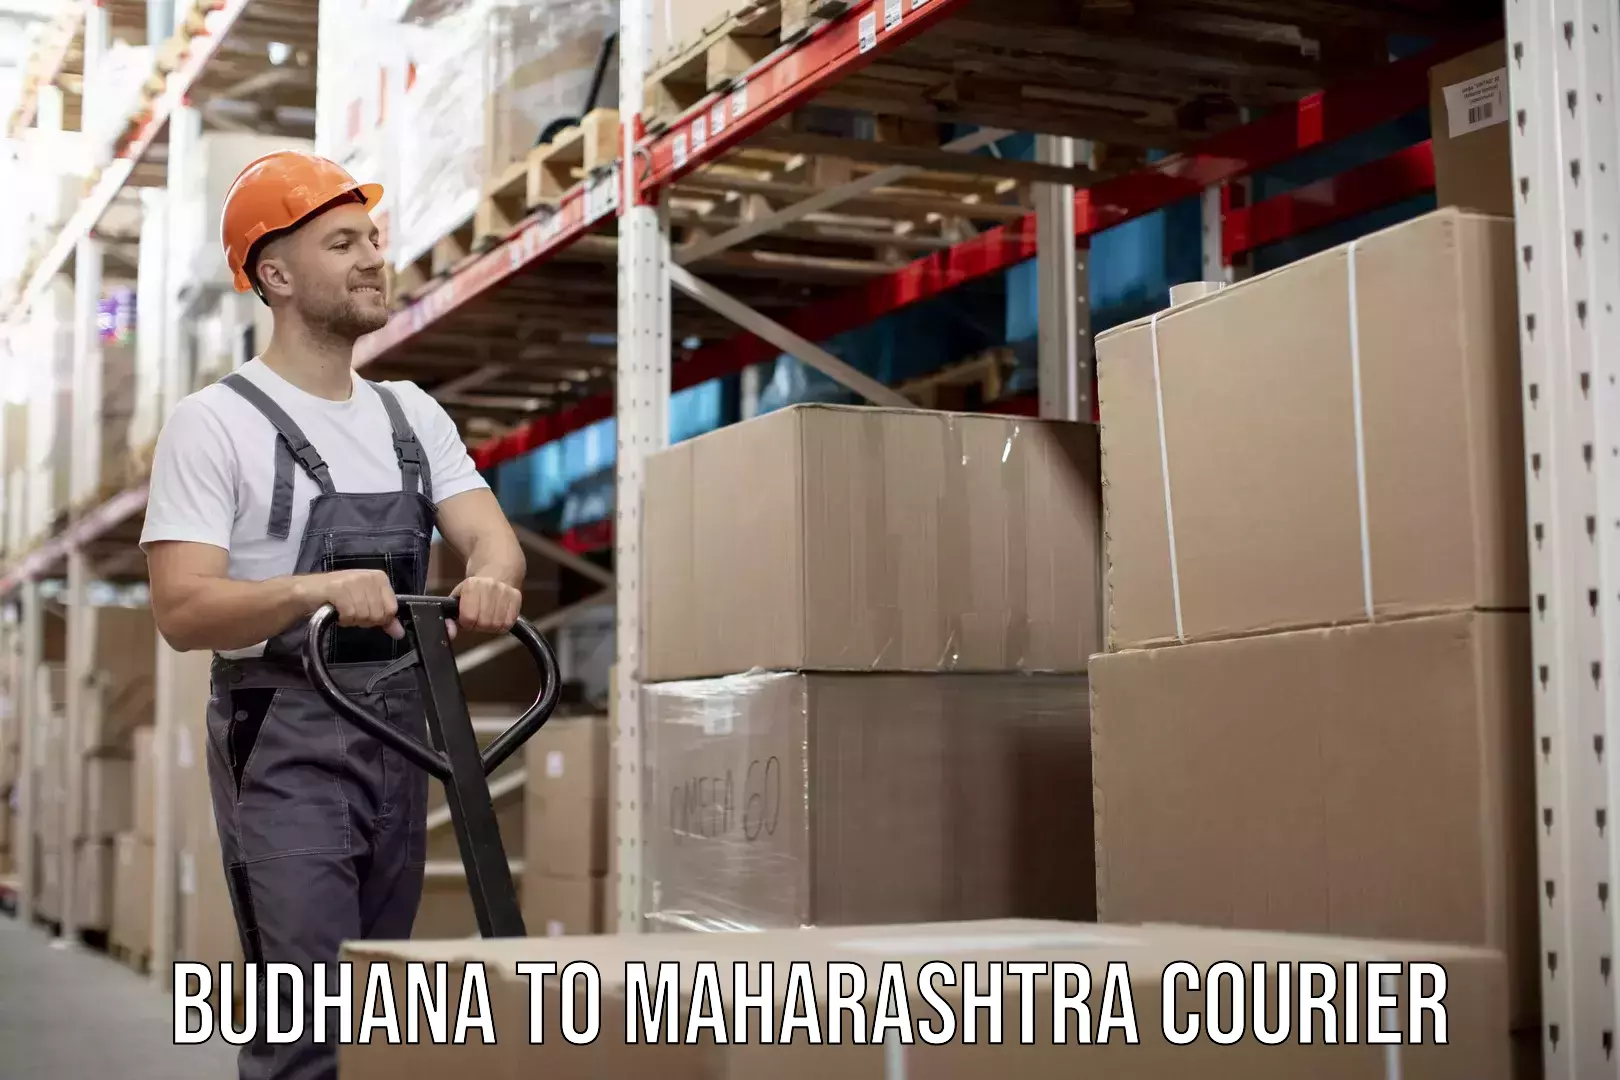 Efficient shipping operations Budhana to Maharashtra